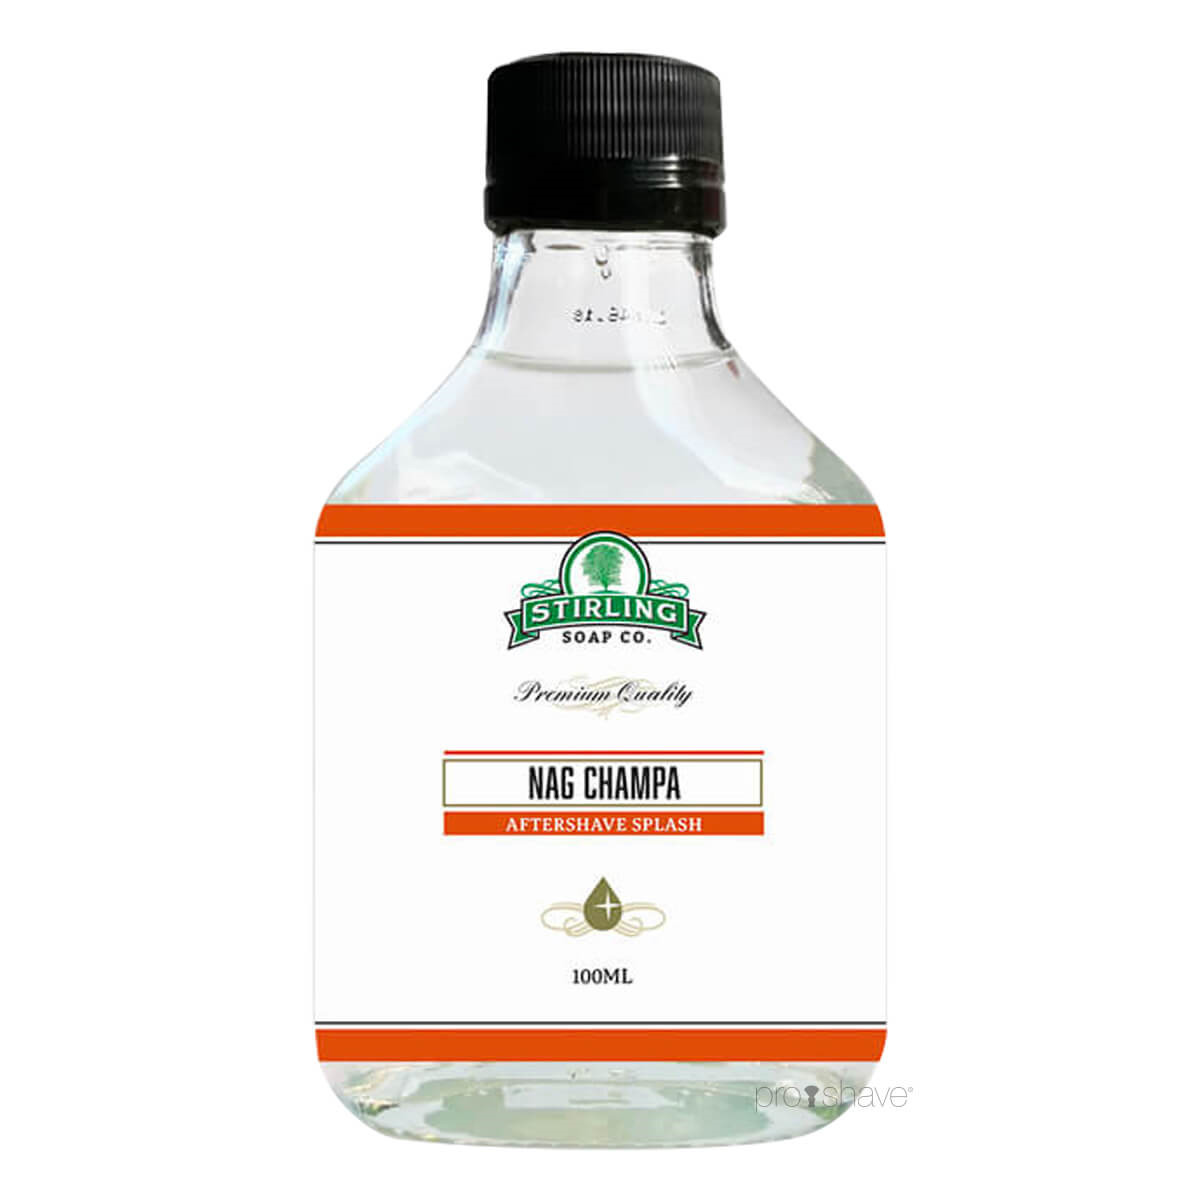 Stirling Soap Co. Aftershave Splash, Nag Champa, 100 ml.